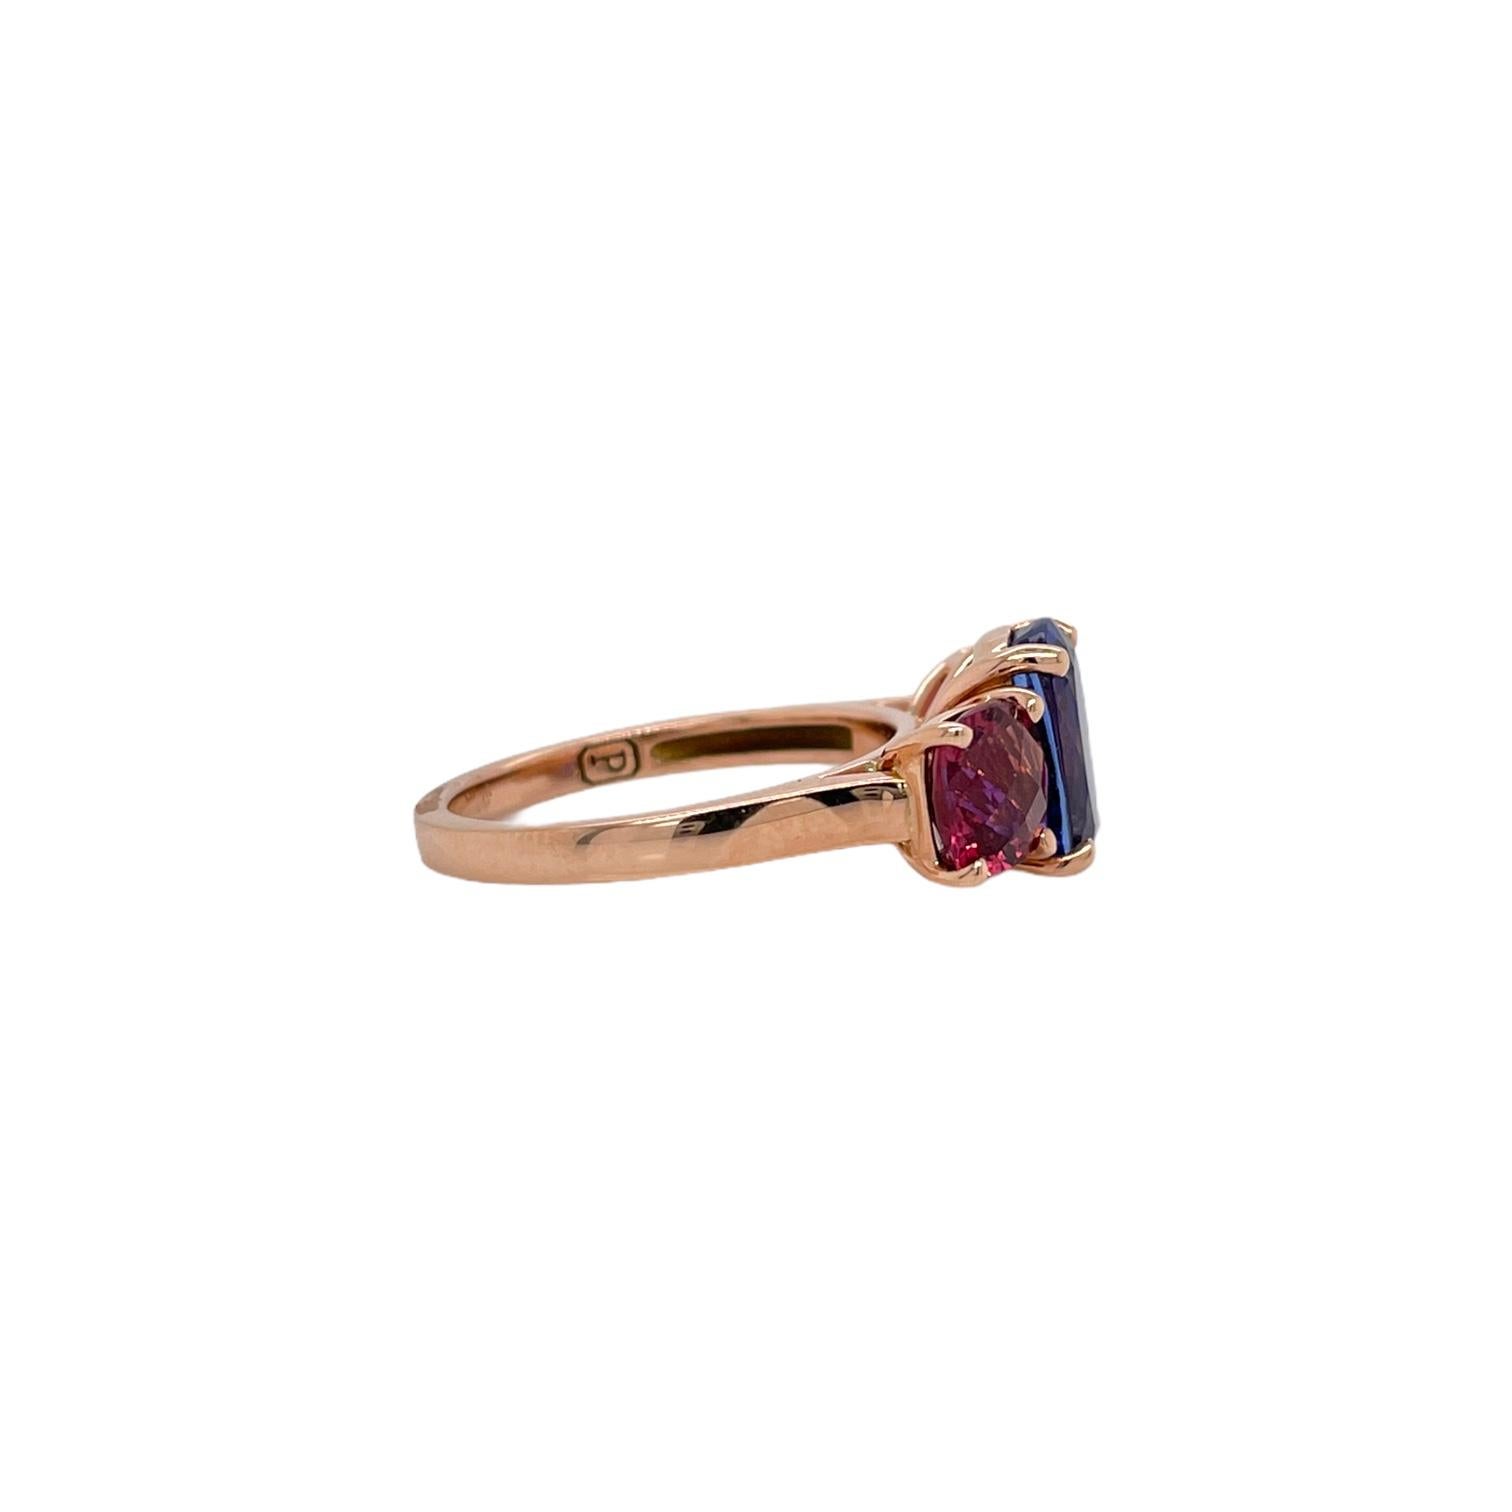 Moderner Ring mit drei Steinen aus Tansanit und rosa Turmalin in 14 Karat Roségold. Der Ring enthält 1 fein geschliffenen kissenförmigen Tansanit (3,06ct) und 2 präzise aufeinander abgestimmte quadratische kissenförmige rosa Turmaline (1,85tcw). Die